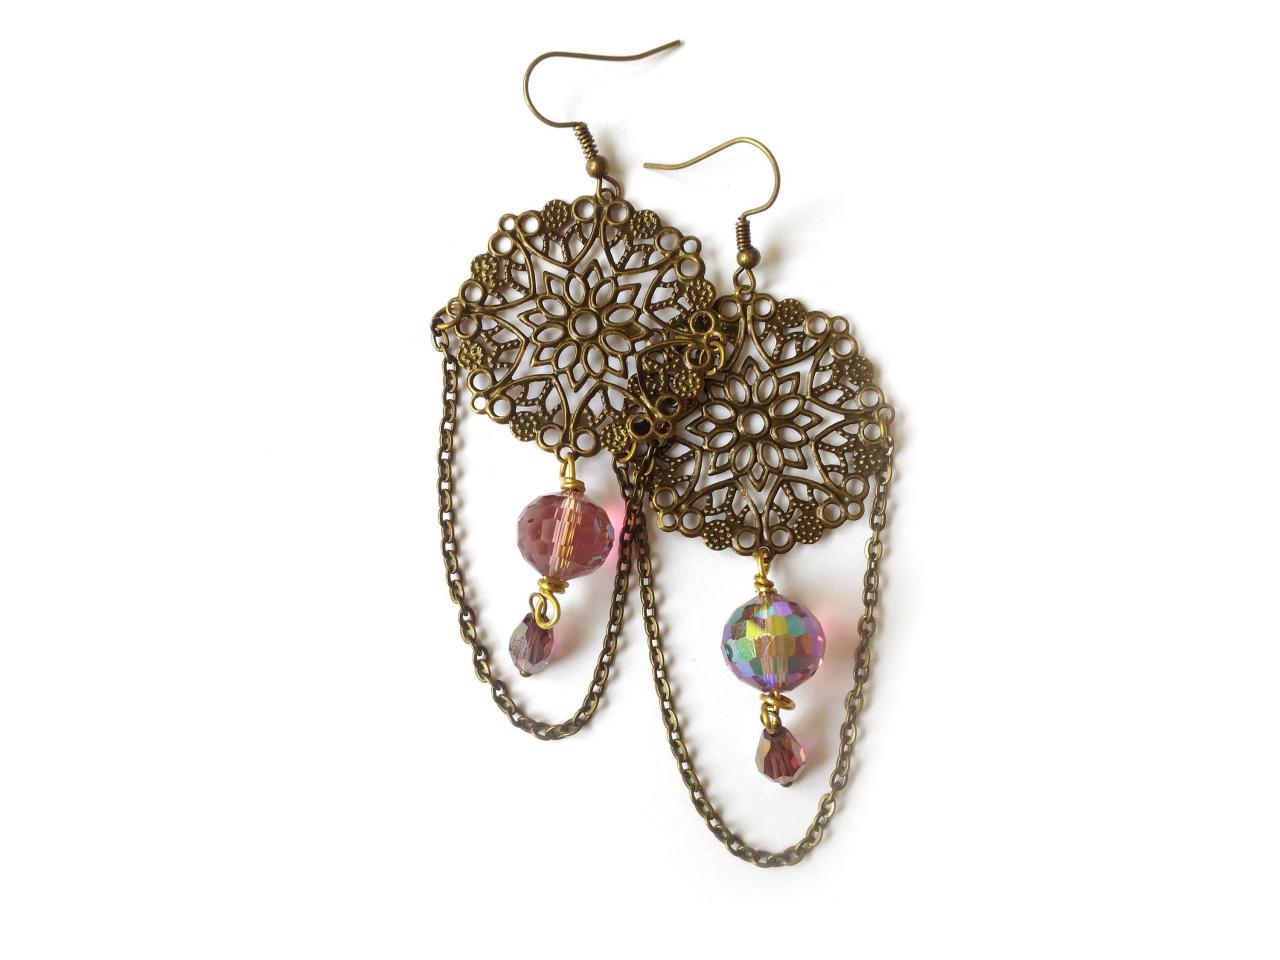 Long Boho Bronze Filigree Earrings With Purple Glass Beads, Lightweight Chain Earrings, Purple Bohemian Chandelier Earrings, Gift For Her